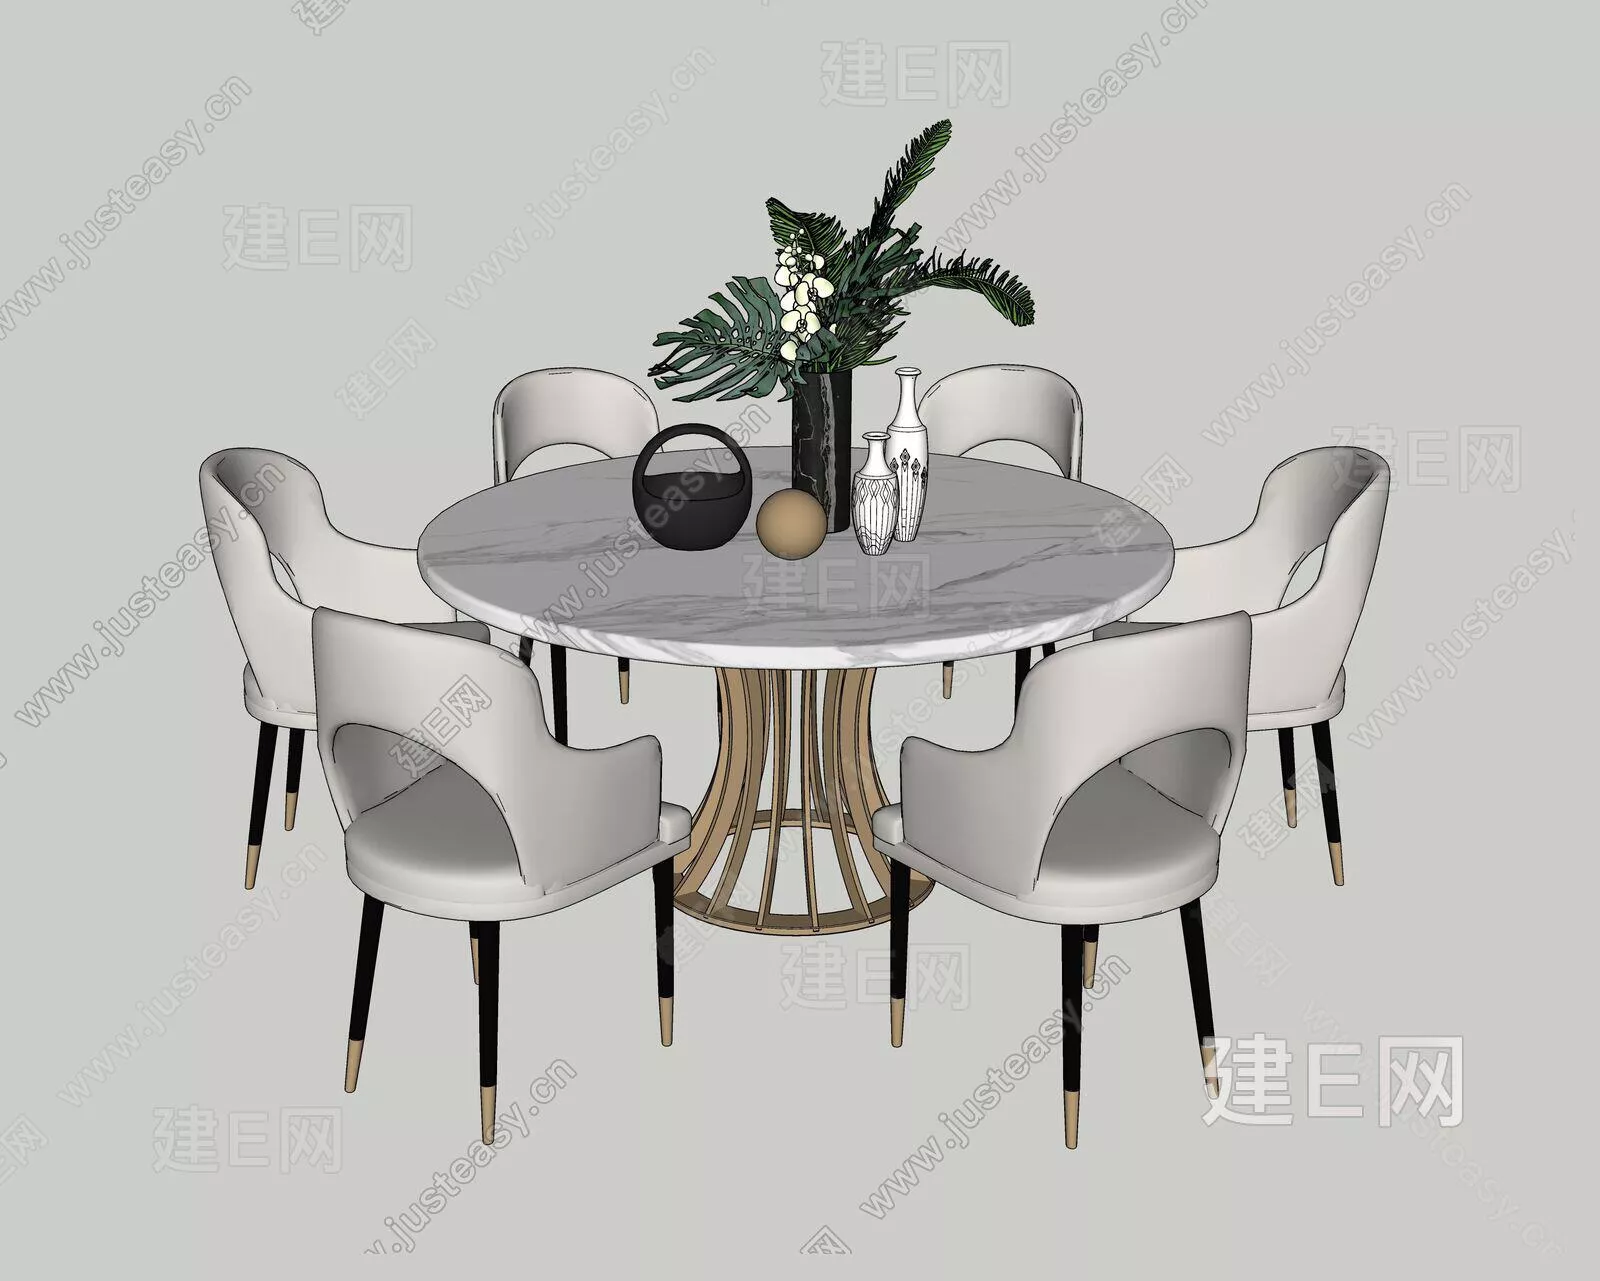 MODERN DINING TABLE SET - SKETCHUP 3D MODEL - ENSCAPE - 109527444